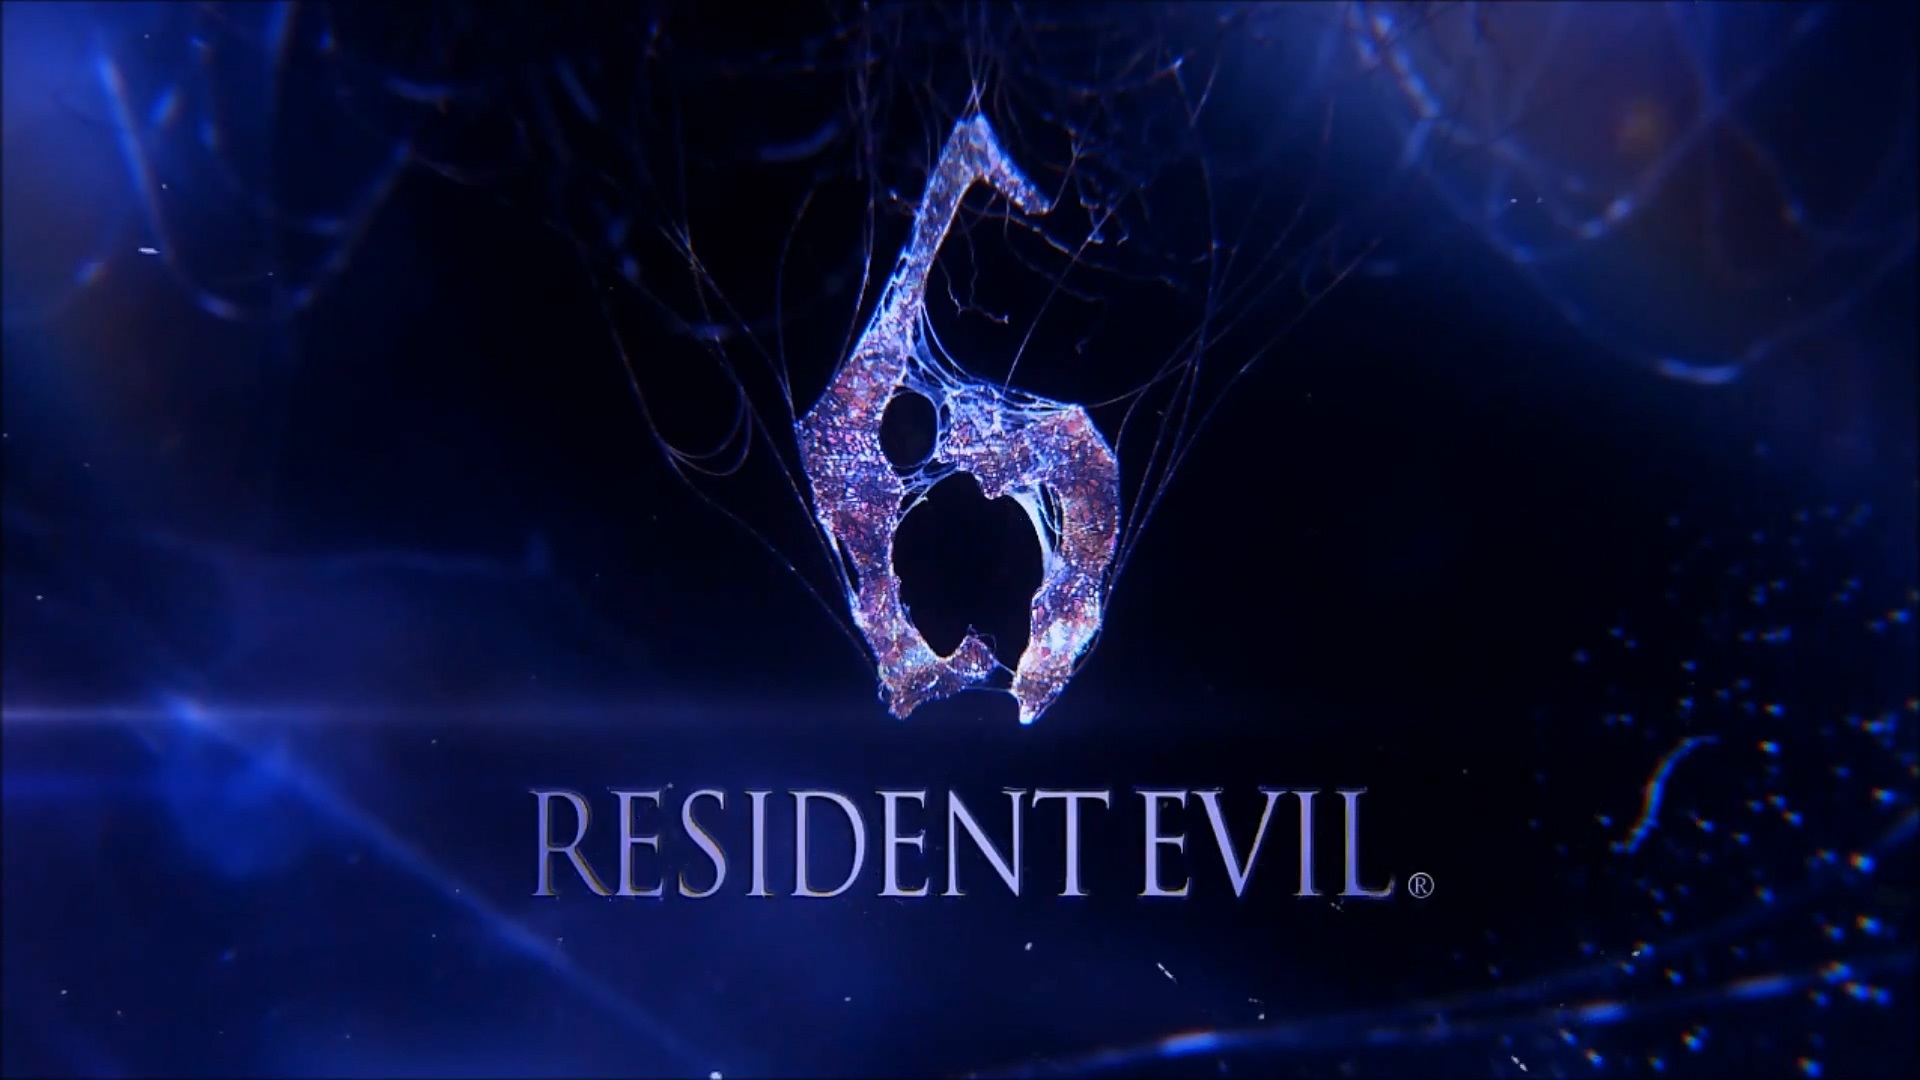 Resident Evil 6 HD herní plochu #3 - 1920x1080